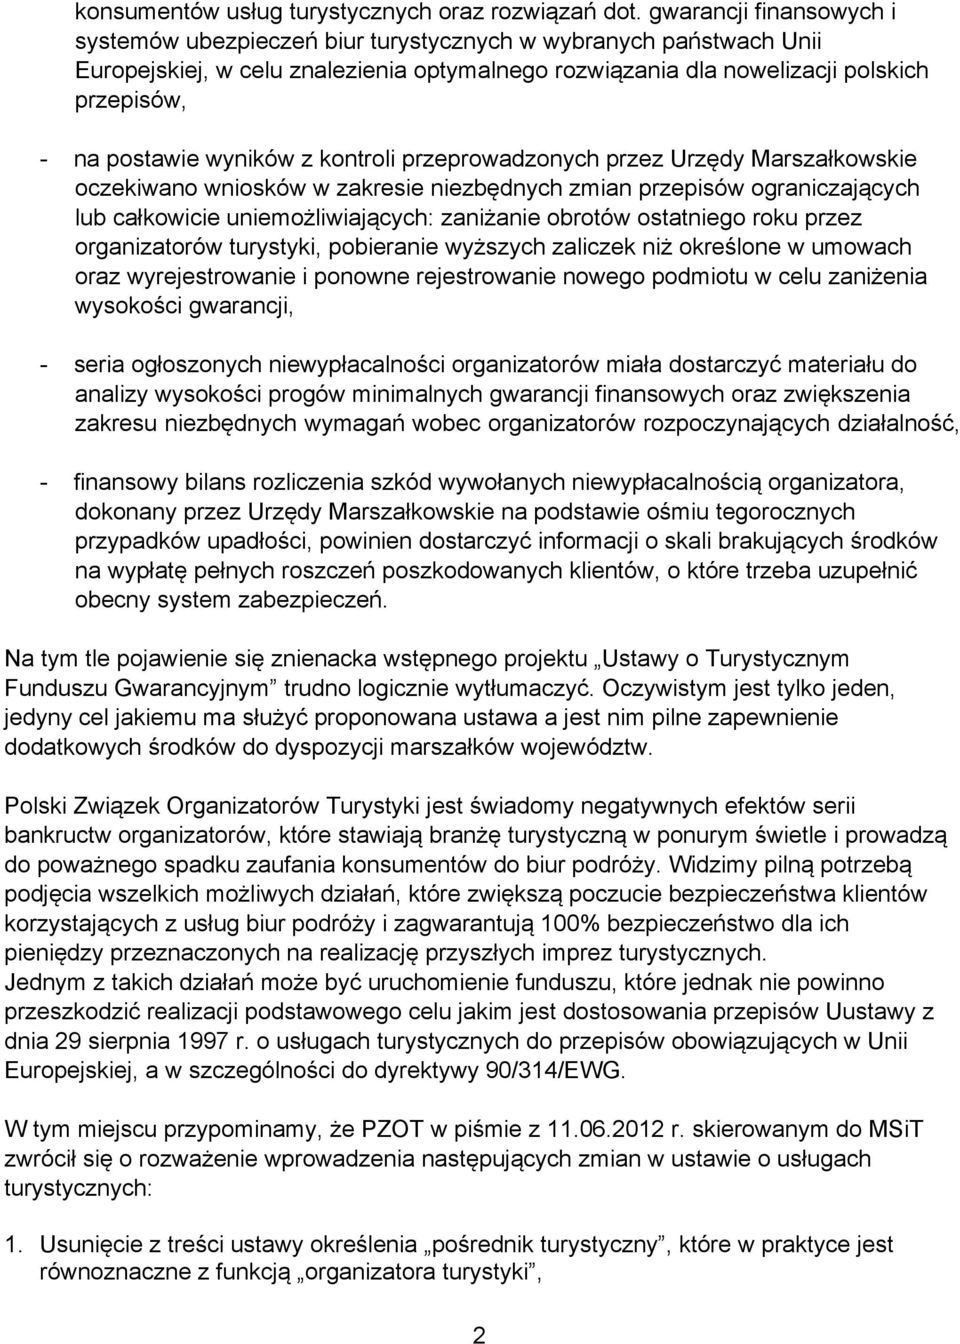 wyników z kontroli przeprowadzonych przez Urzędy Marszałkowskie oczekiwano wniosków w zakresie niezbędnych zmian przepisów ograniczających lub całkowicie uniemożliwiających: zaniżanie obrotów